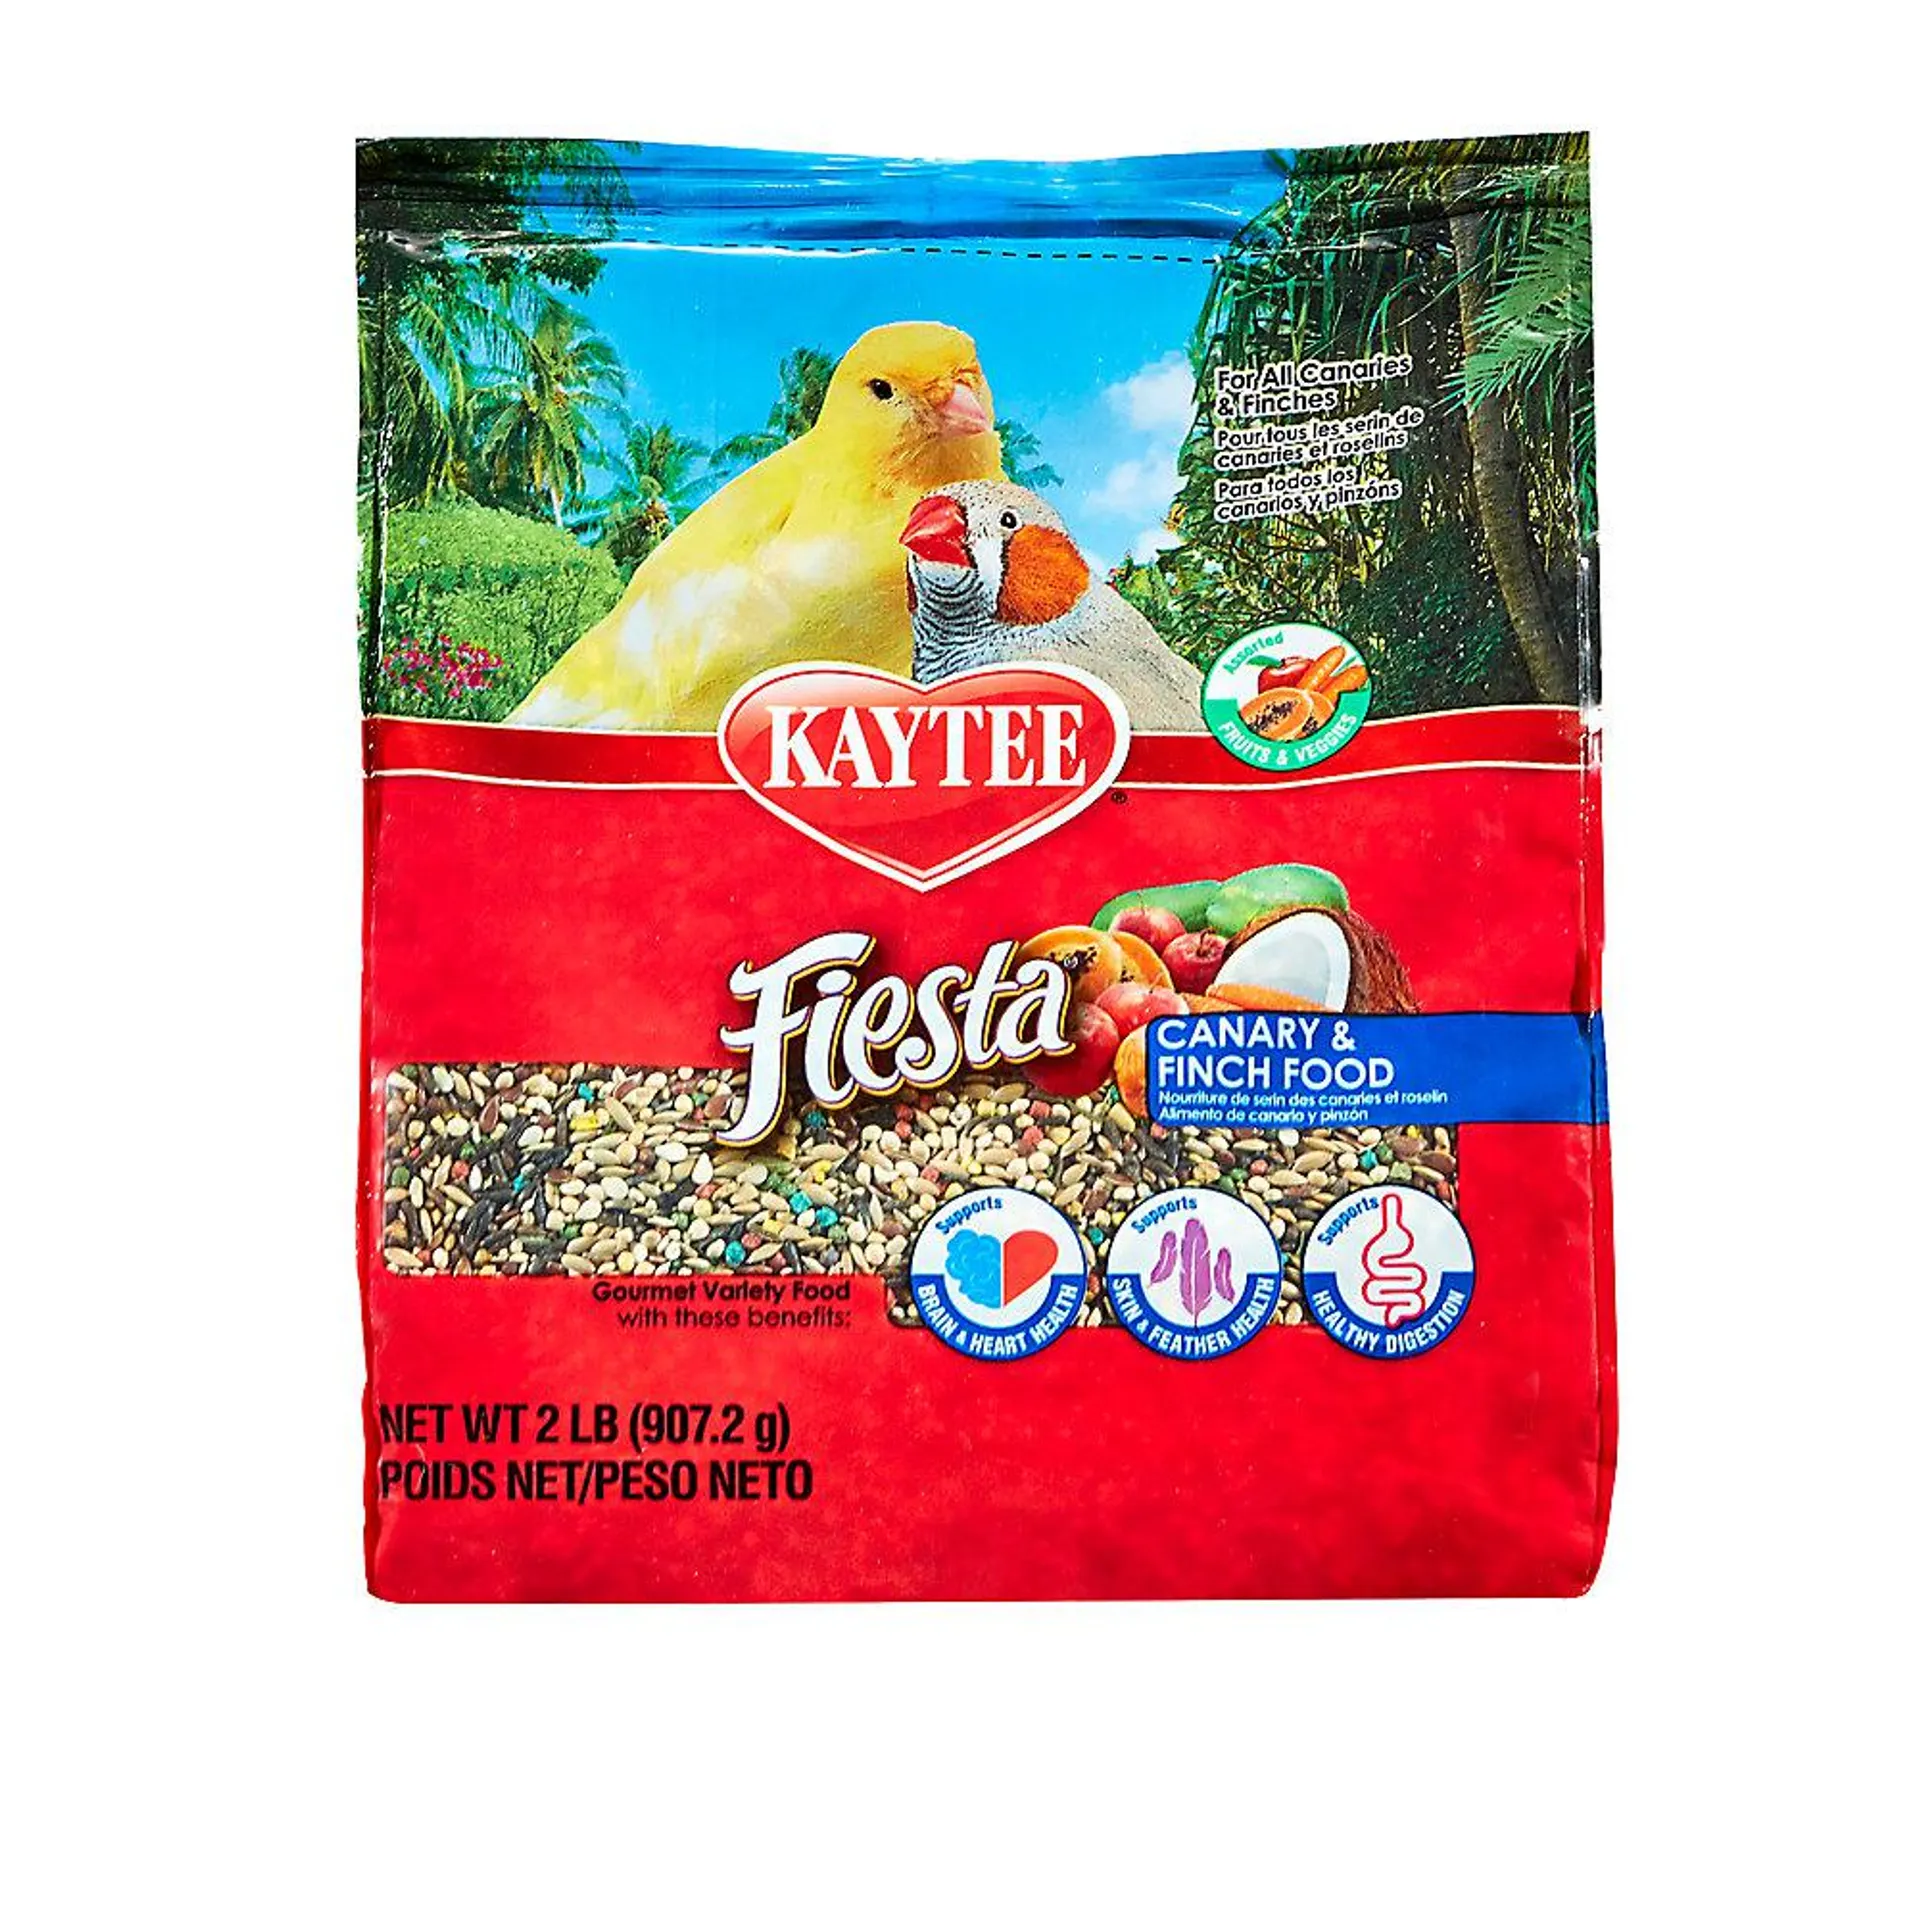 KAYTEE® Fiesta Canary & Finch Food